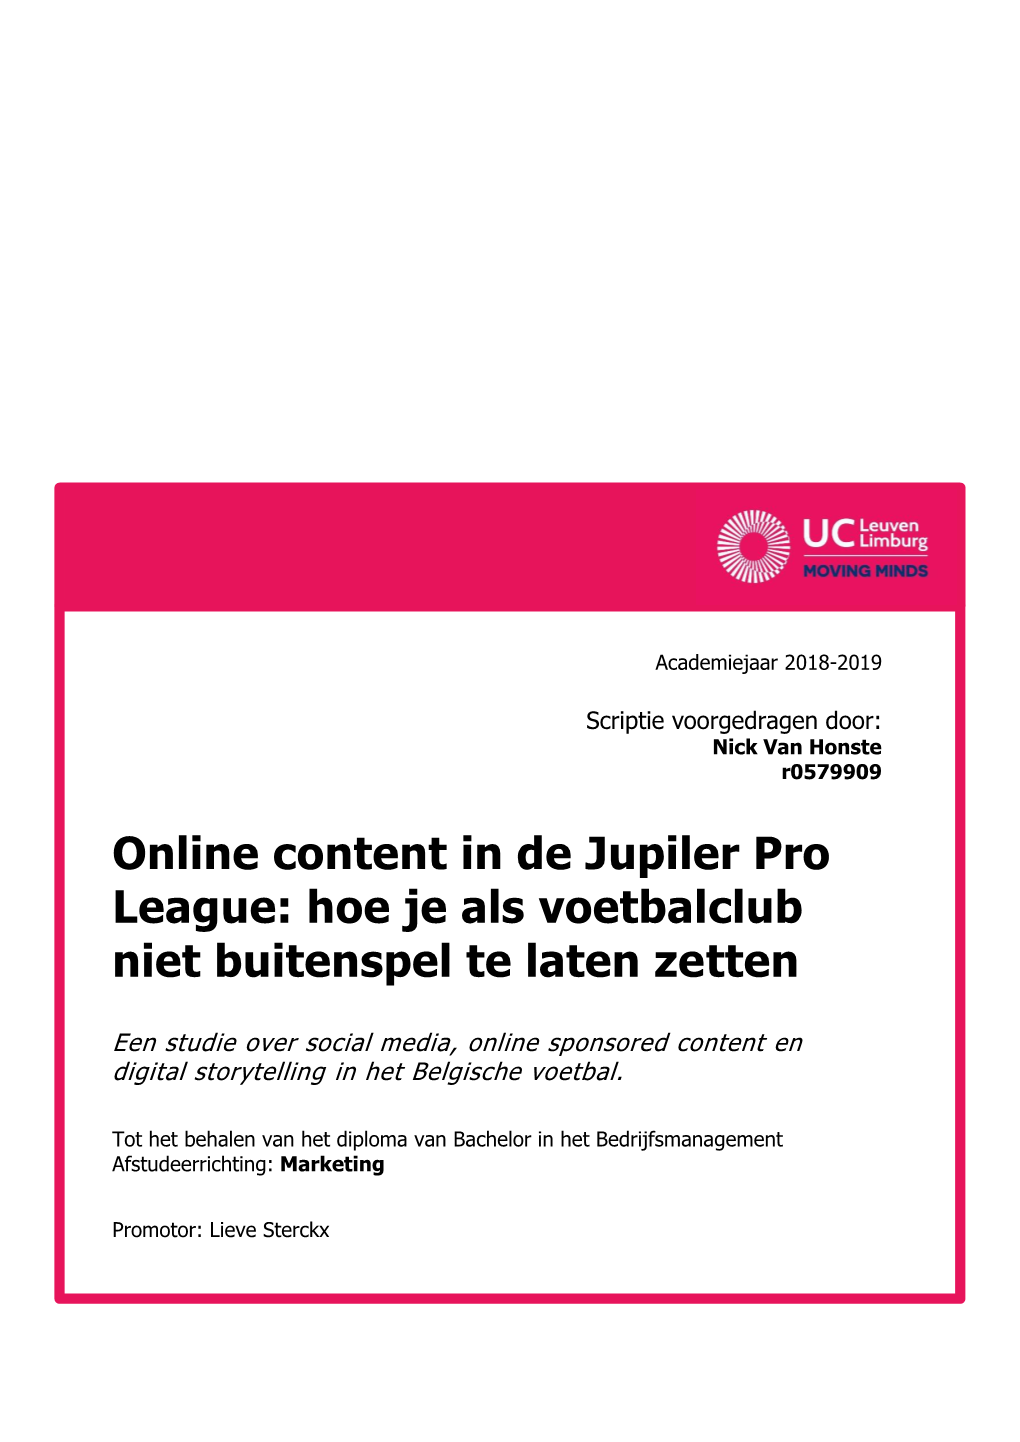 Online Content in De Jupiler Pro League: Hoe Je Als Voetbalclub Niet Buitenspel Te Laten Zetten